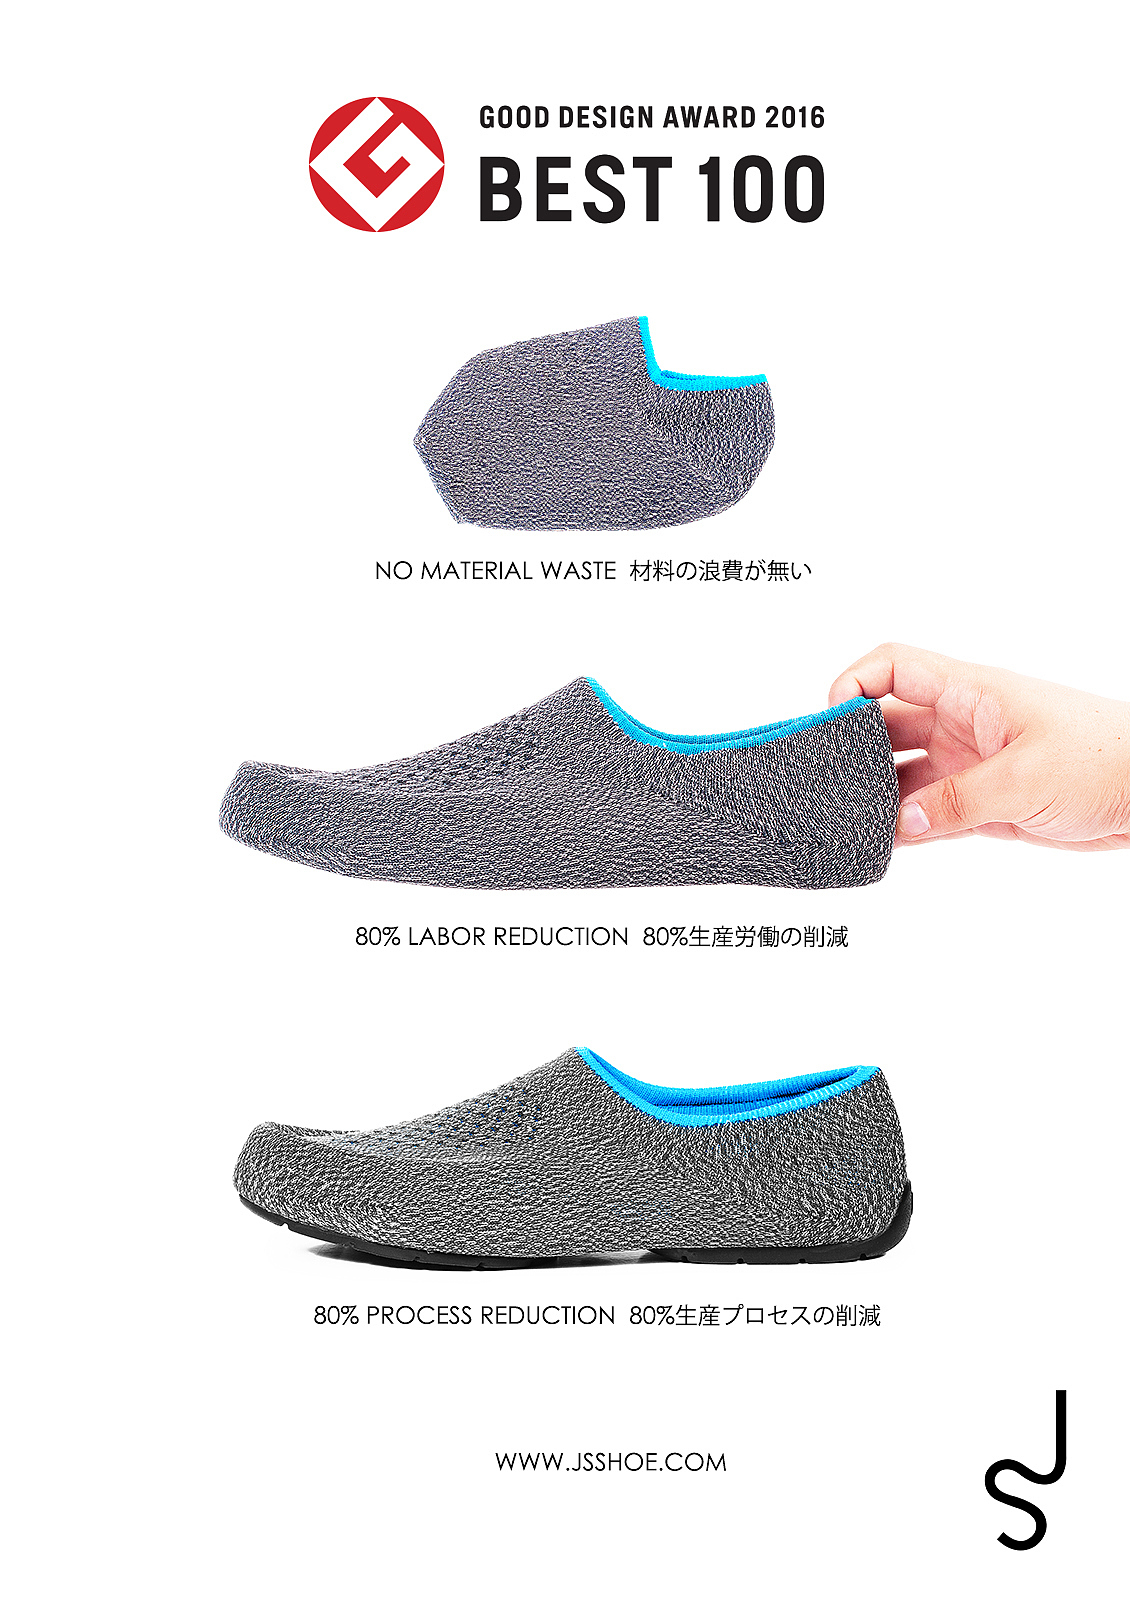 JS 3D，针织鞋，鞋子，创意，产品设计，